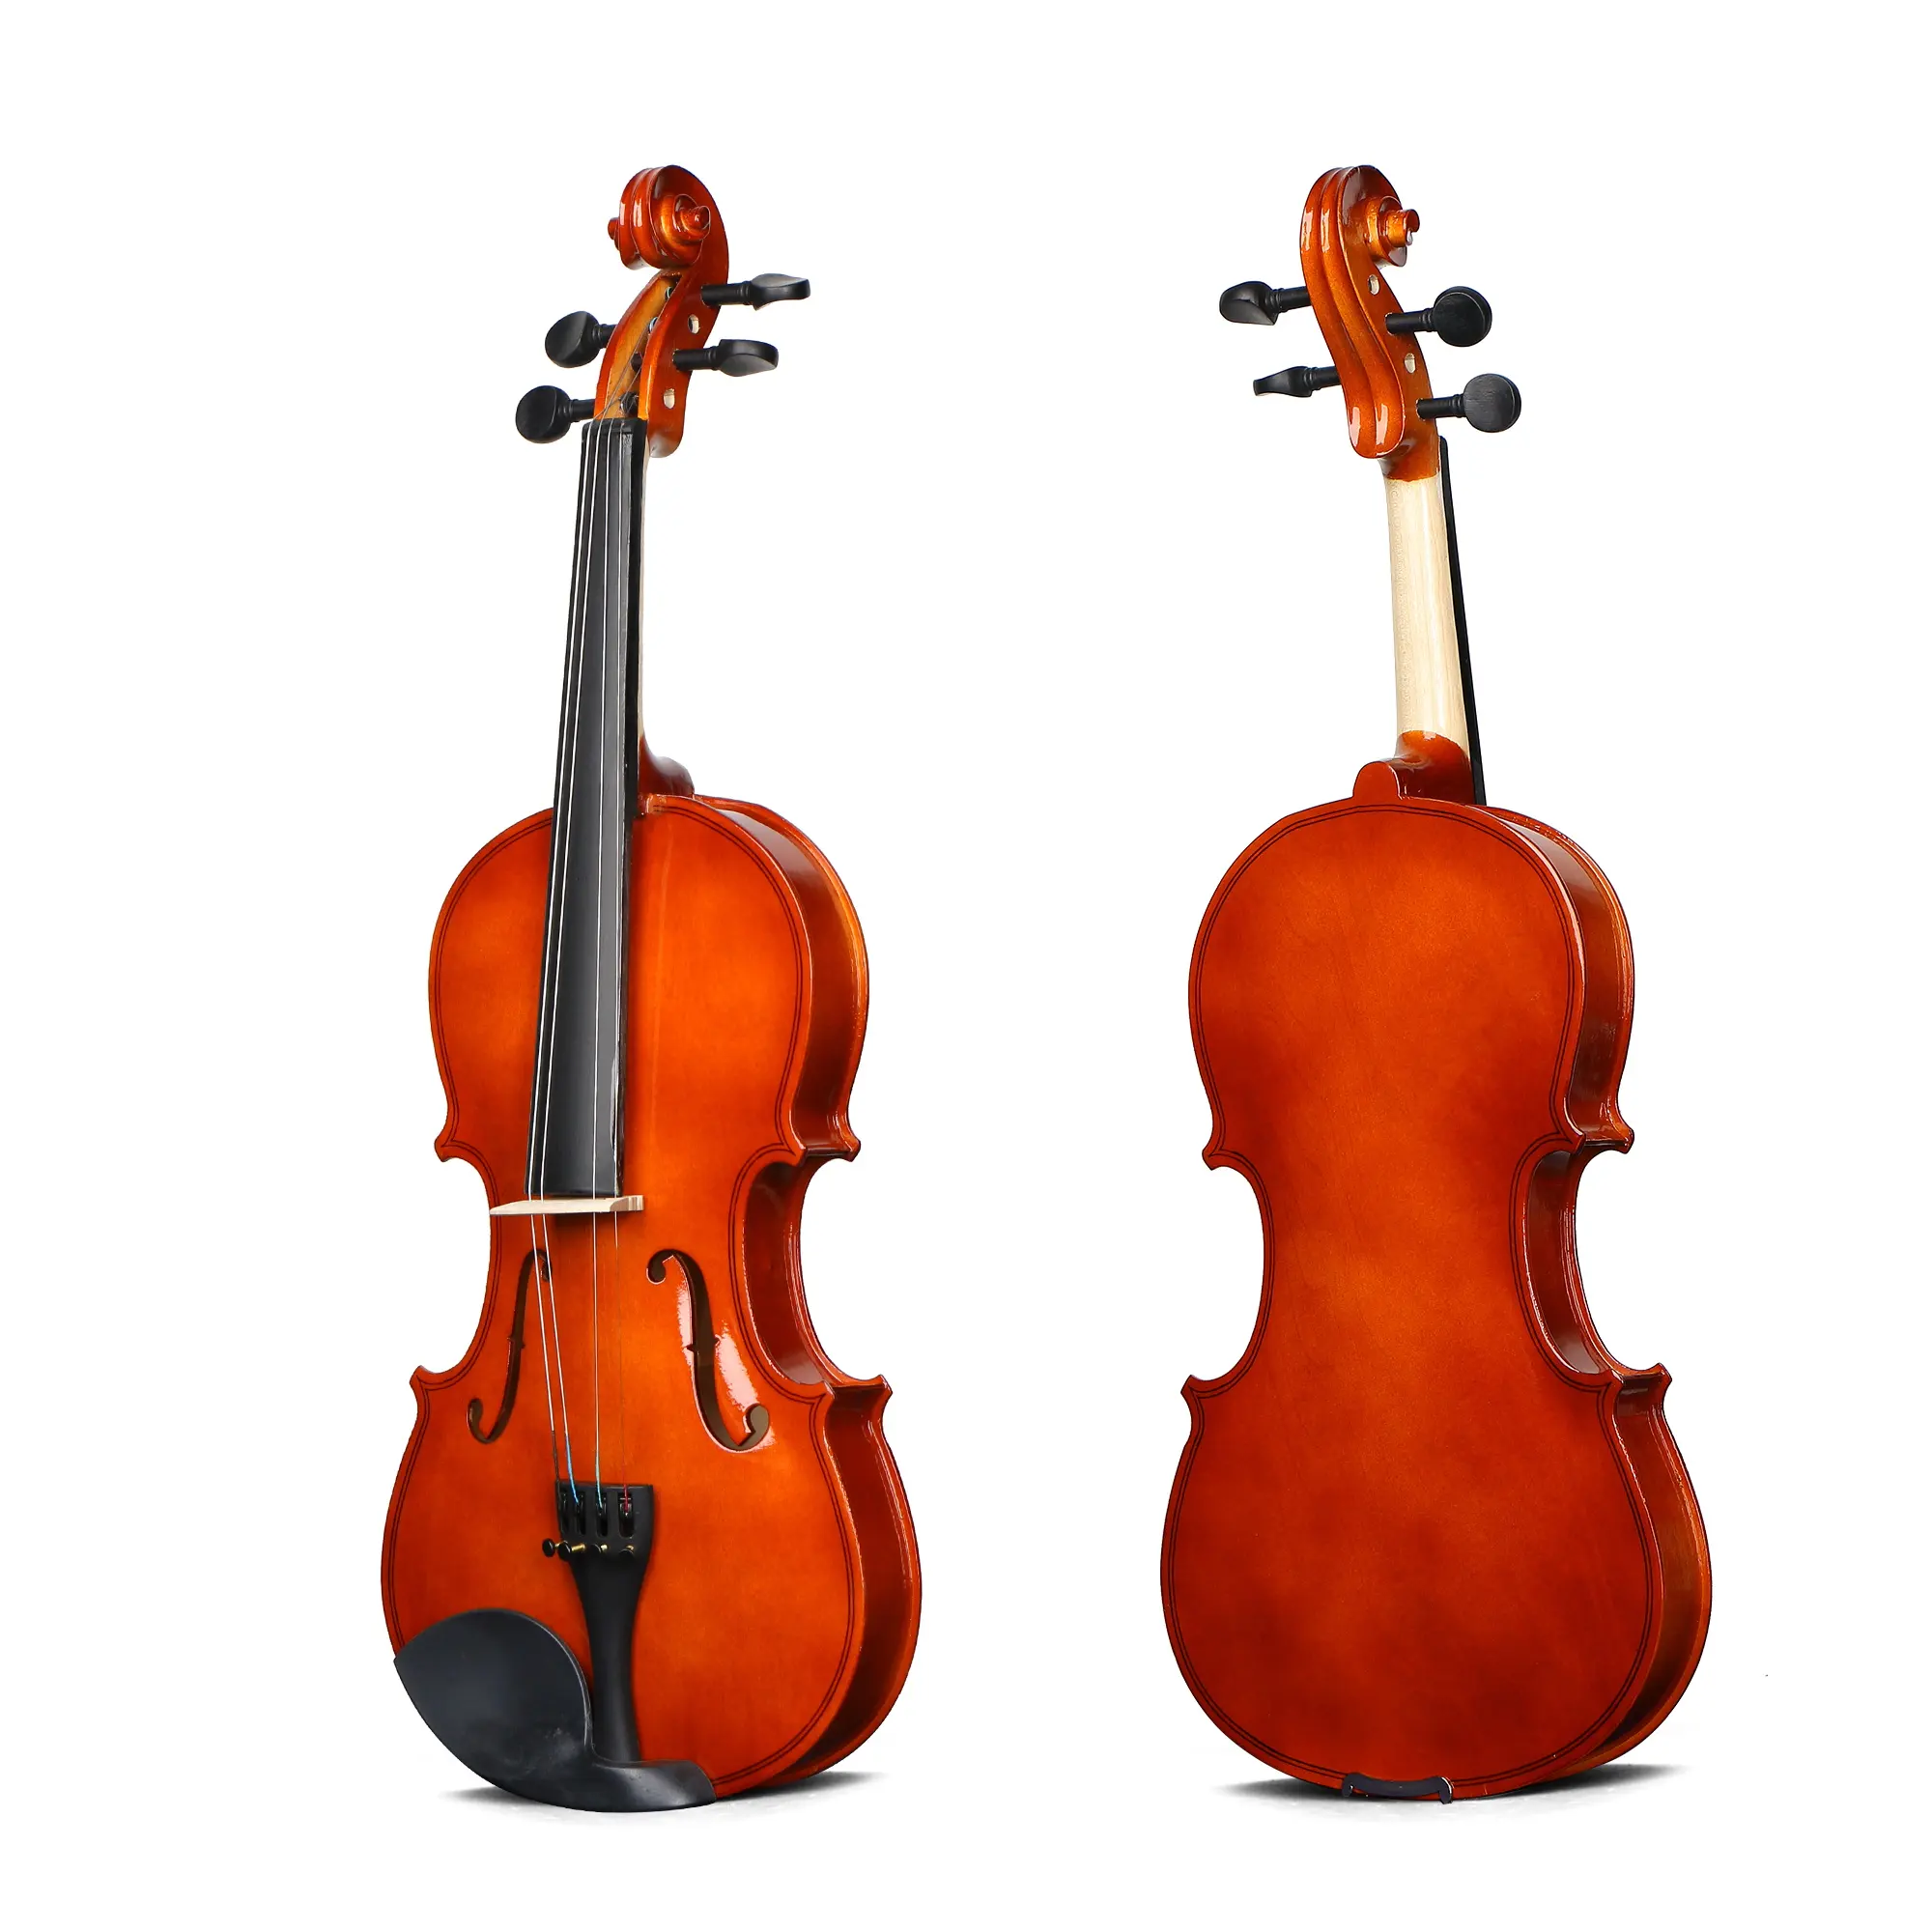 2021 Huayi Factory hot selling handmade violin for student musical instruments violin china